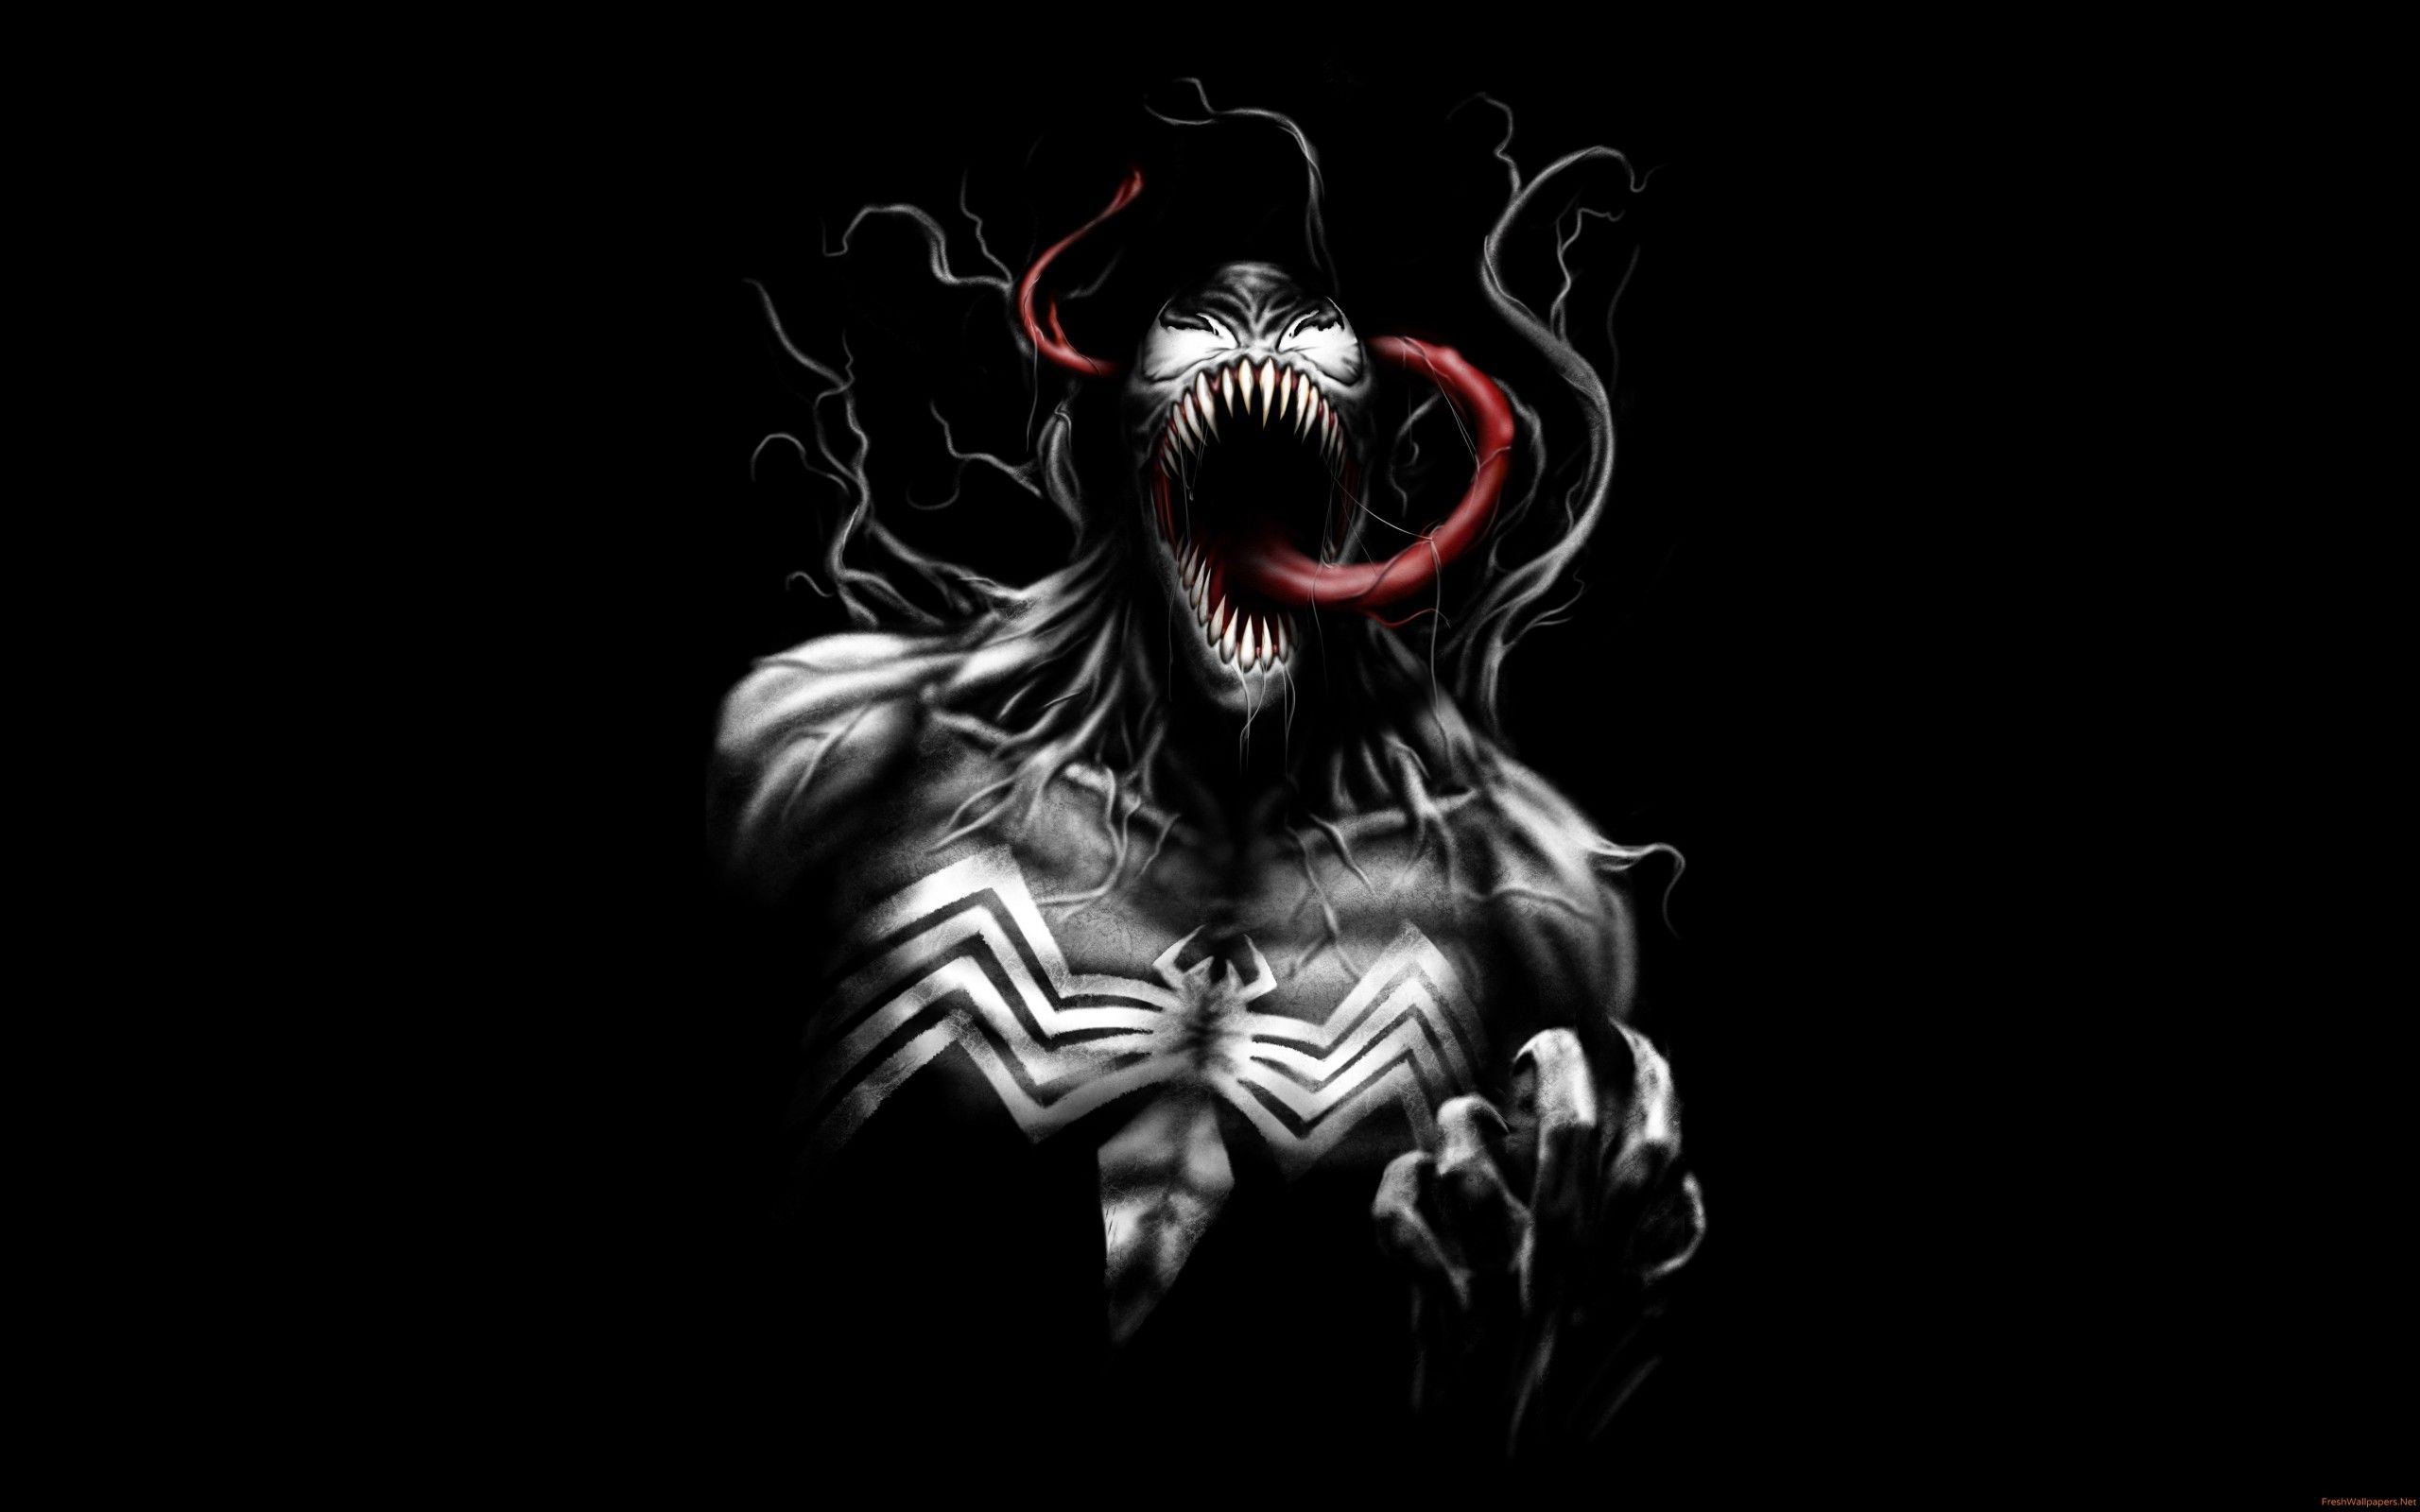 Venom Black Artwork 5K fondos de pantalla | Papeles pintados frescos